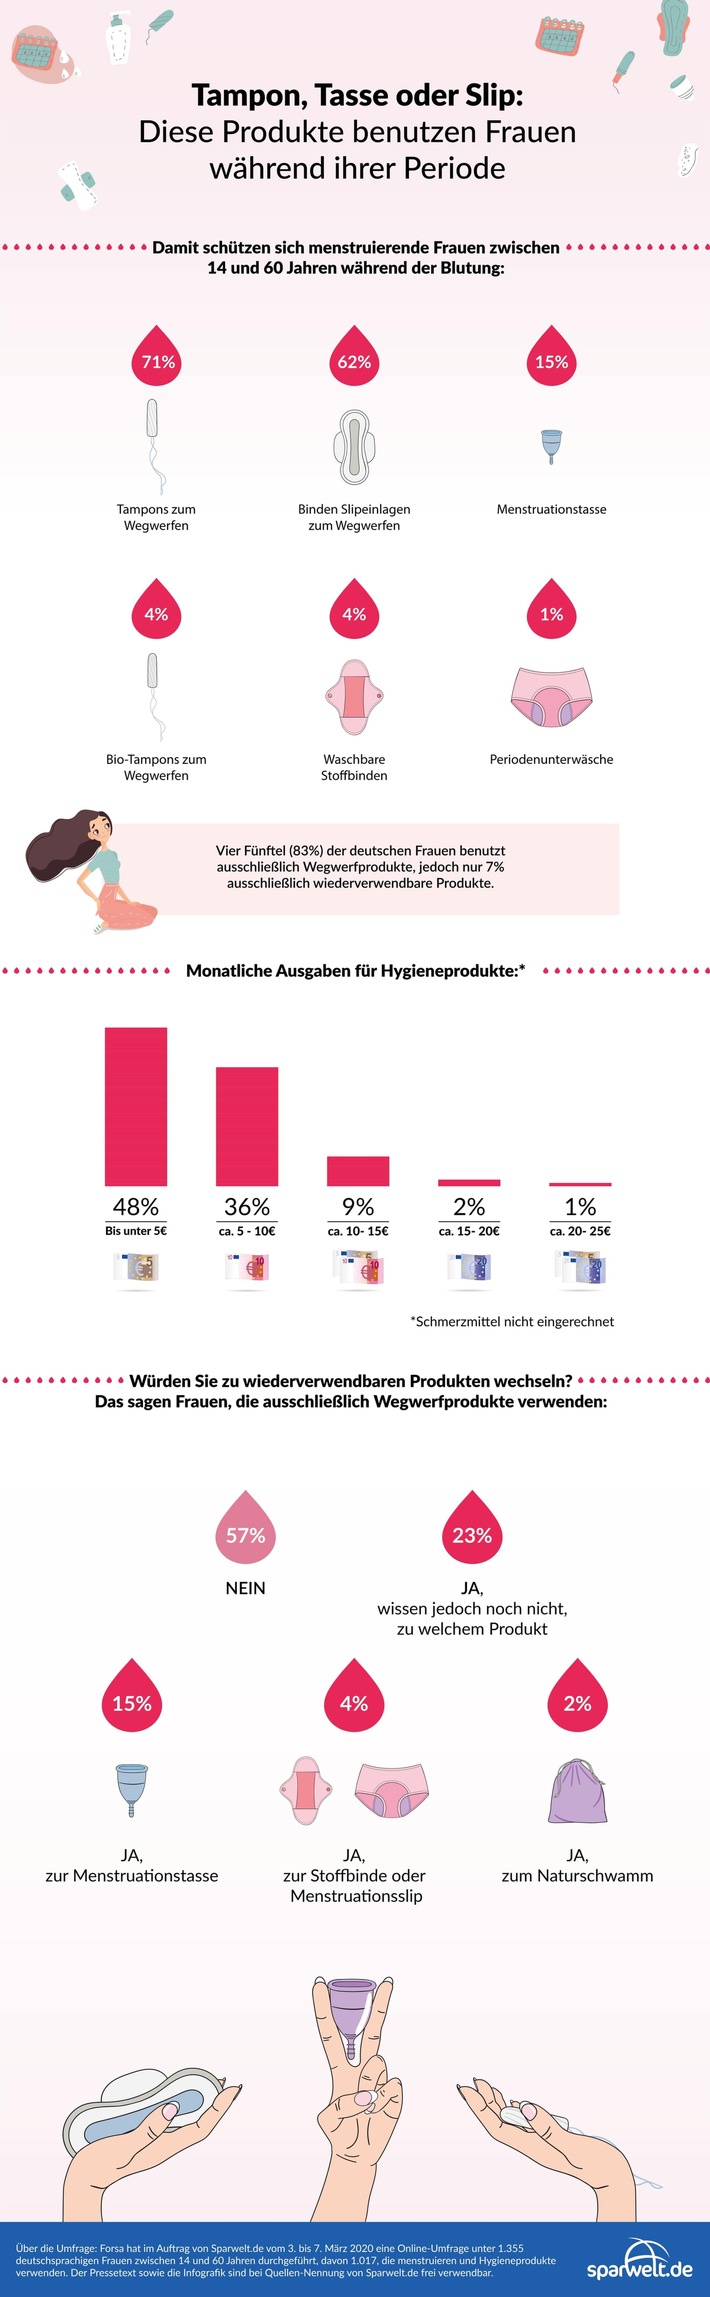 Binde, Tampon oder Tasse: Forsa-Umfrage zeigt, dass Alter und Einkommen der Frau entscheidend sind bei der Wahl des Hygieneprodukts